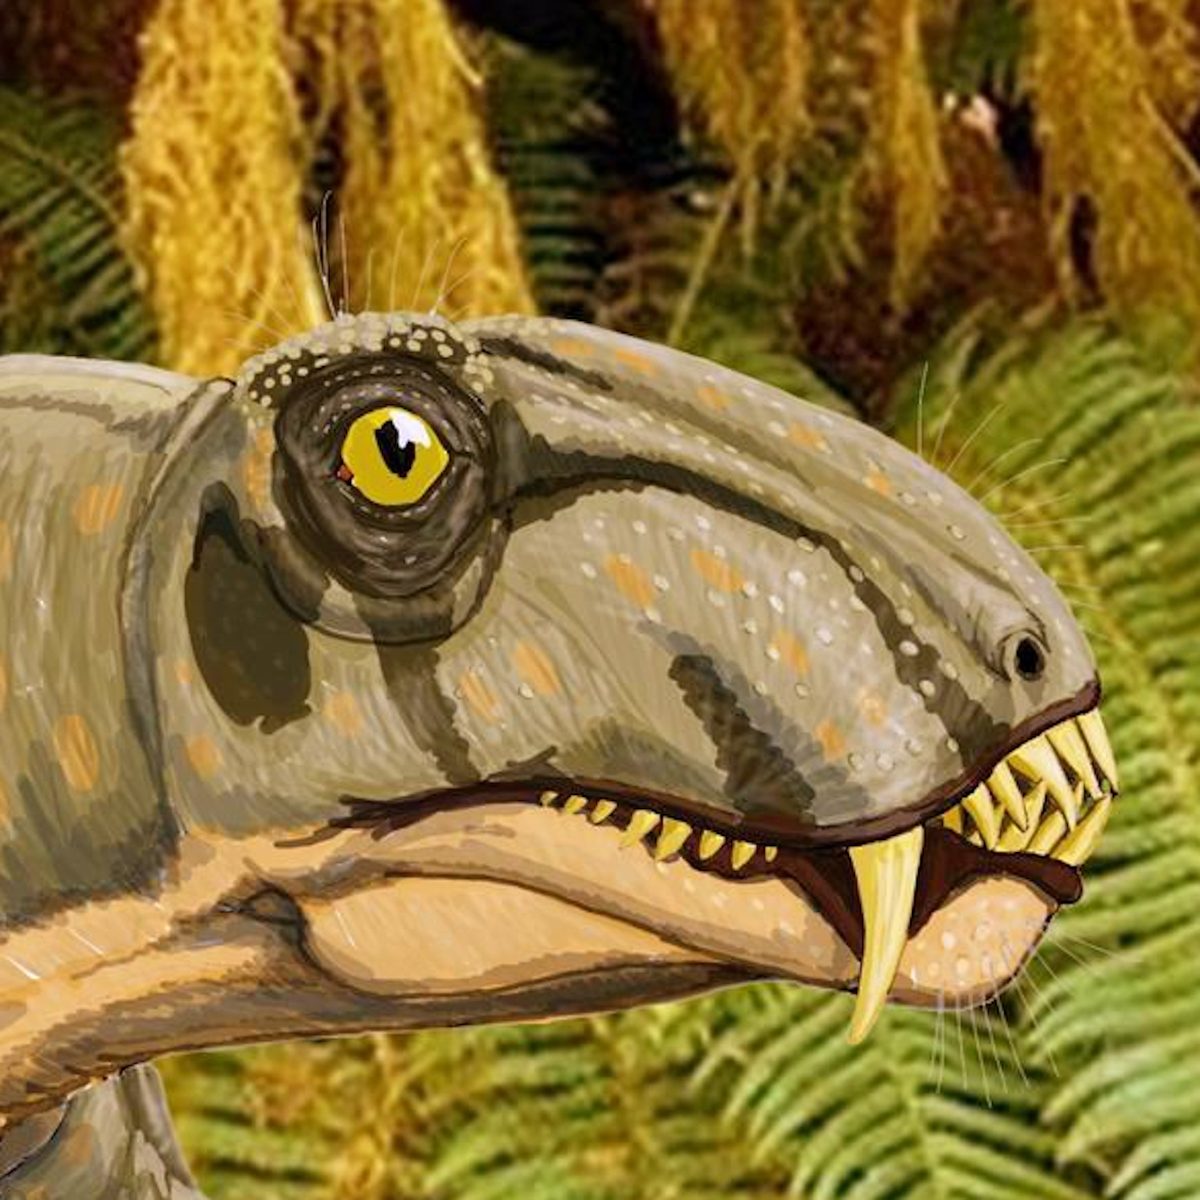 Stenocybus ist ein Reptil, das zu Beginn der Permzeit auf der Erde lebte. Alternativtext: Gezeichneter Kopf und Hals der Riesenechse, mit hellgrüner Haut, dunkelgrünen Streifen am Kopf, einem großen Auge, einem hervorstehenden Gebiss und einem seitlich sichtbaren, nach unten stehenden Säbelzahn.